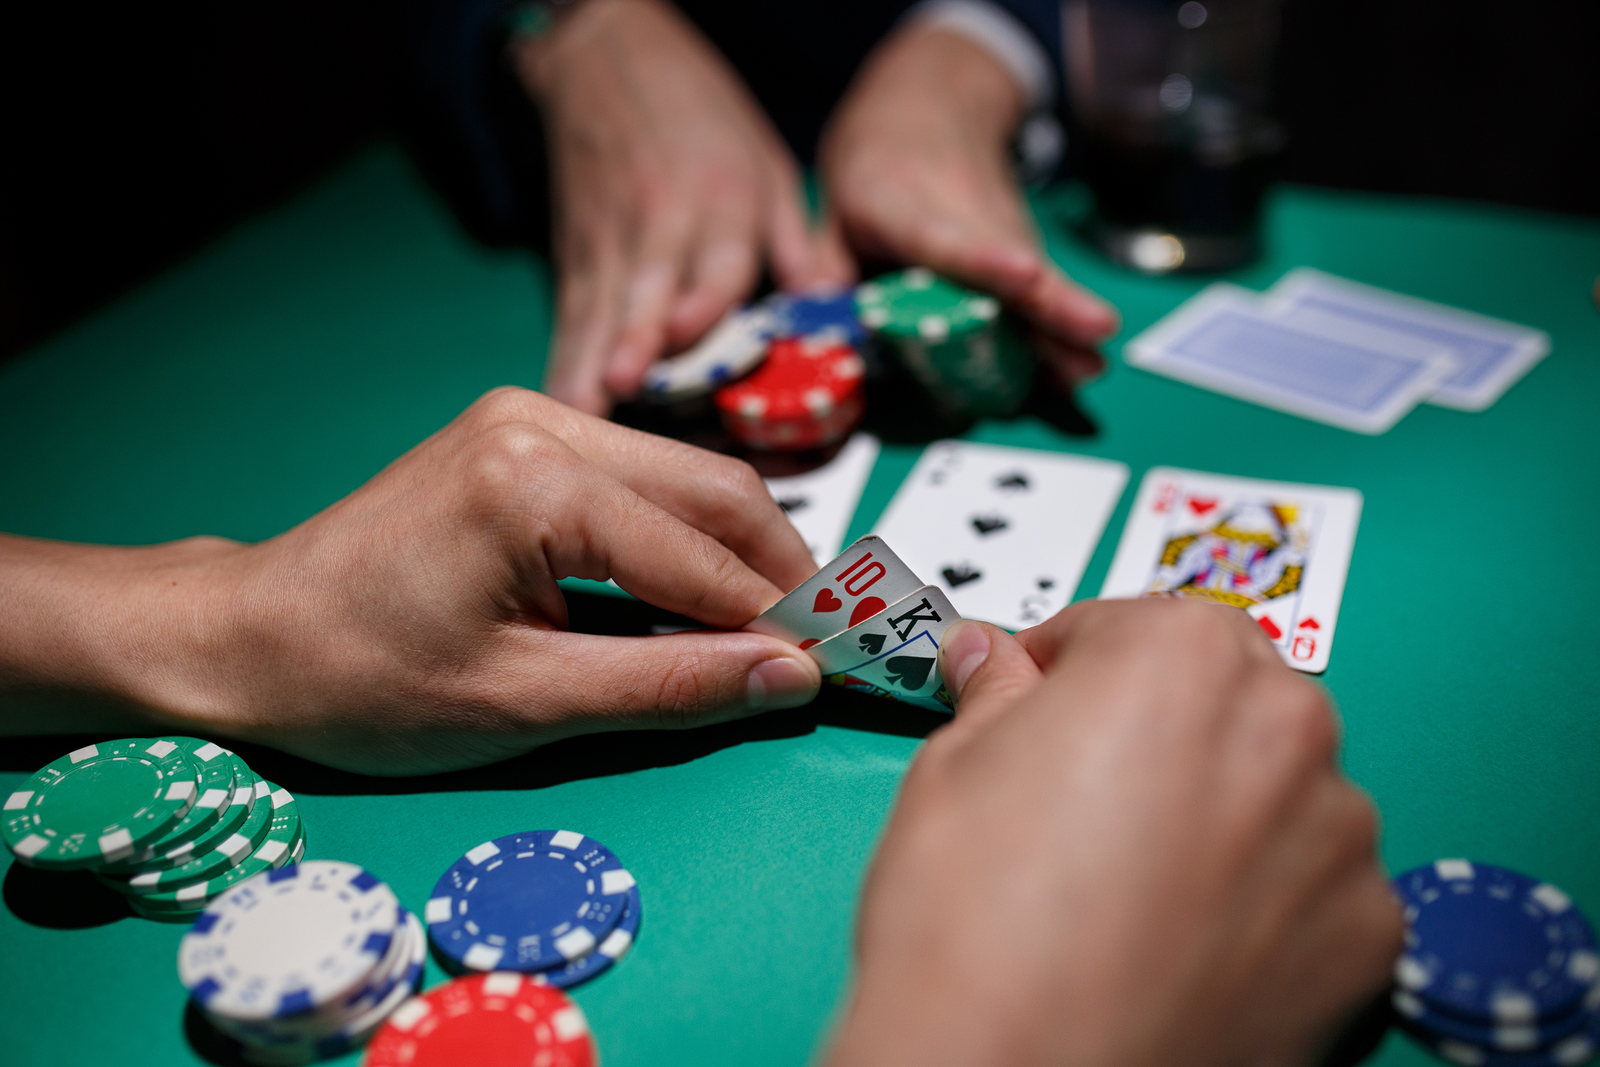 commerce casino poker tournaments 2020